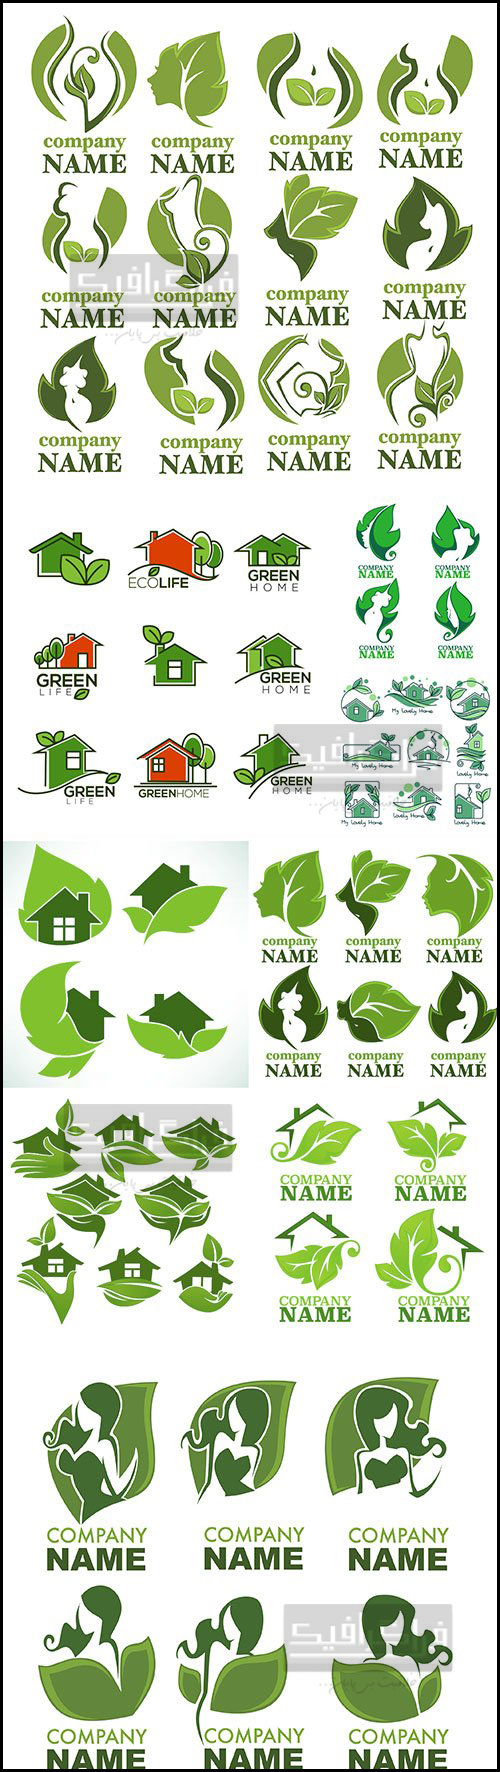 دانلود لوگو های مختلف سبز - وکتور لایه باز